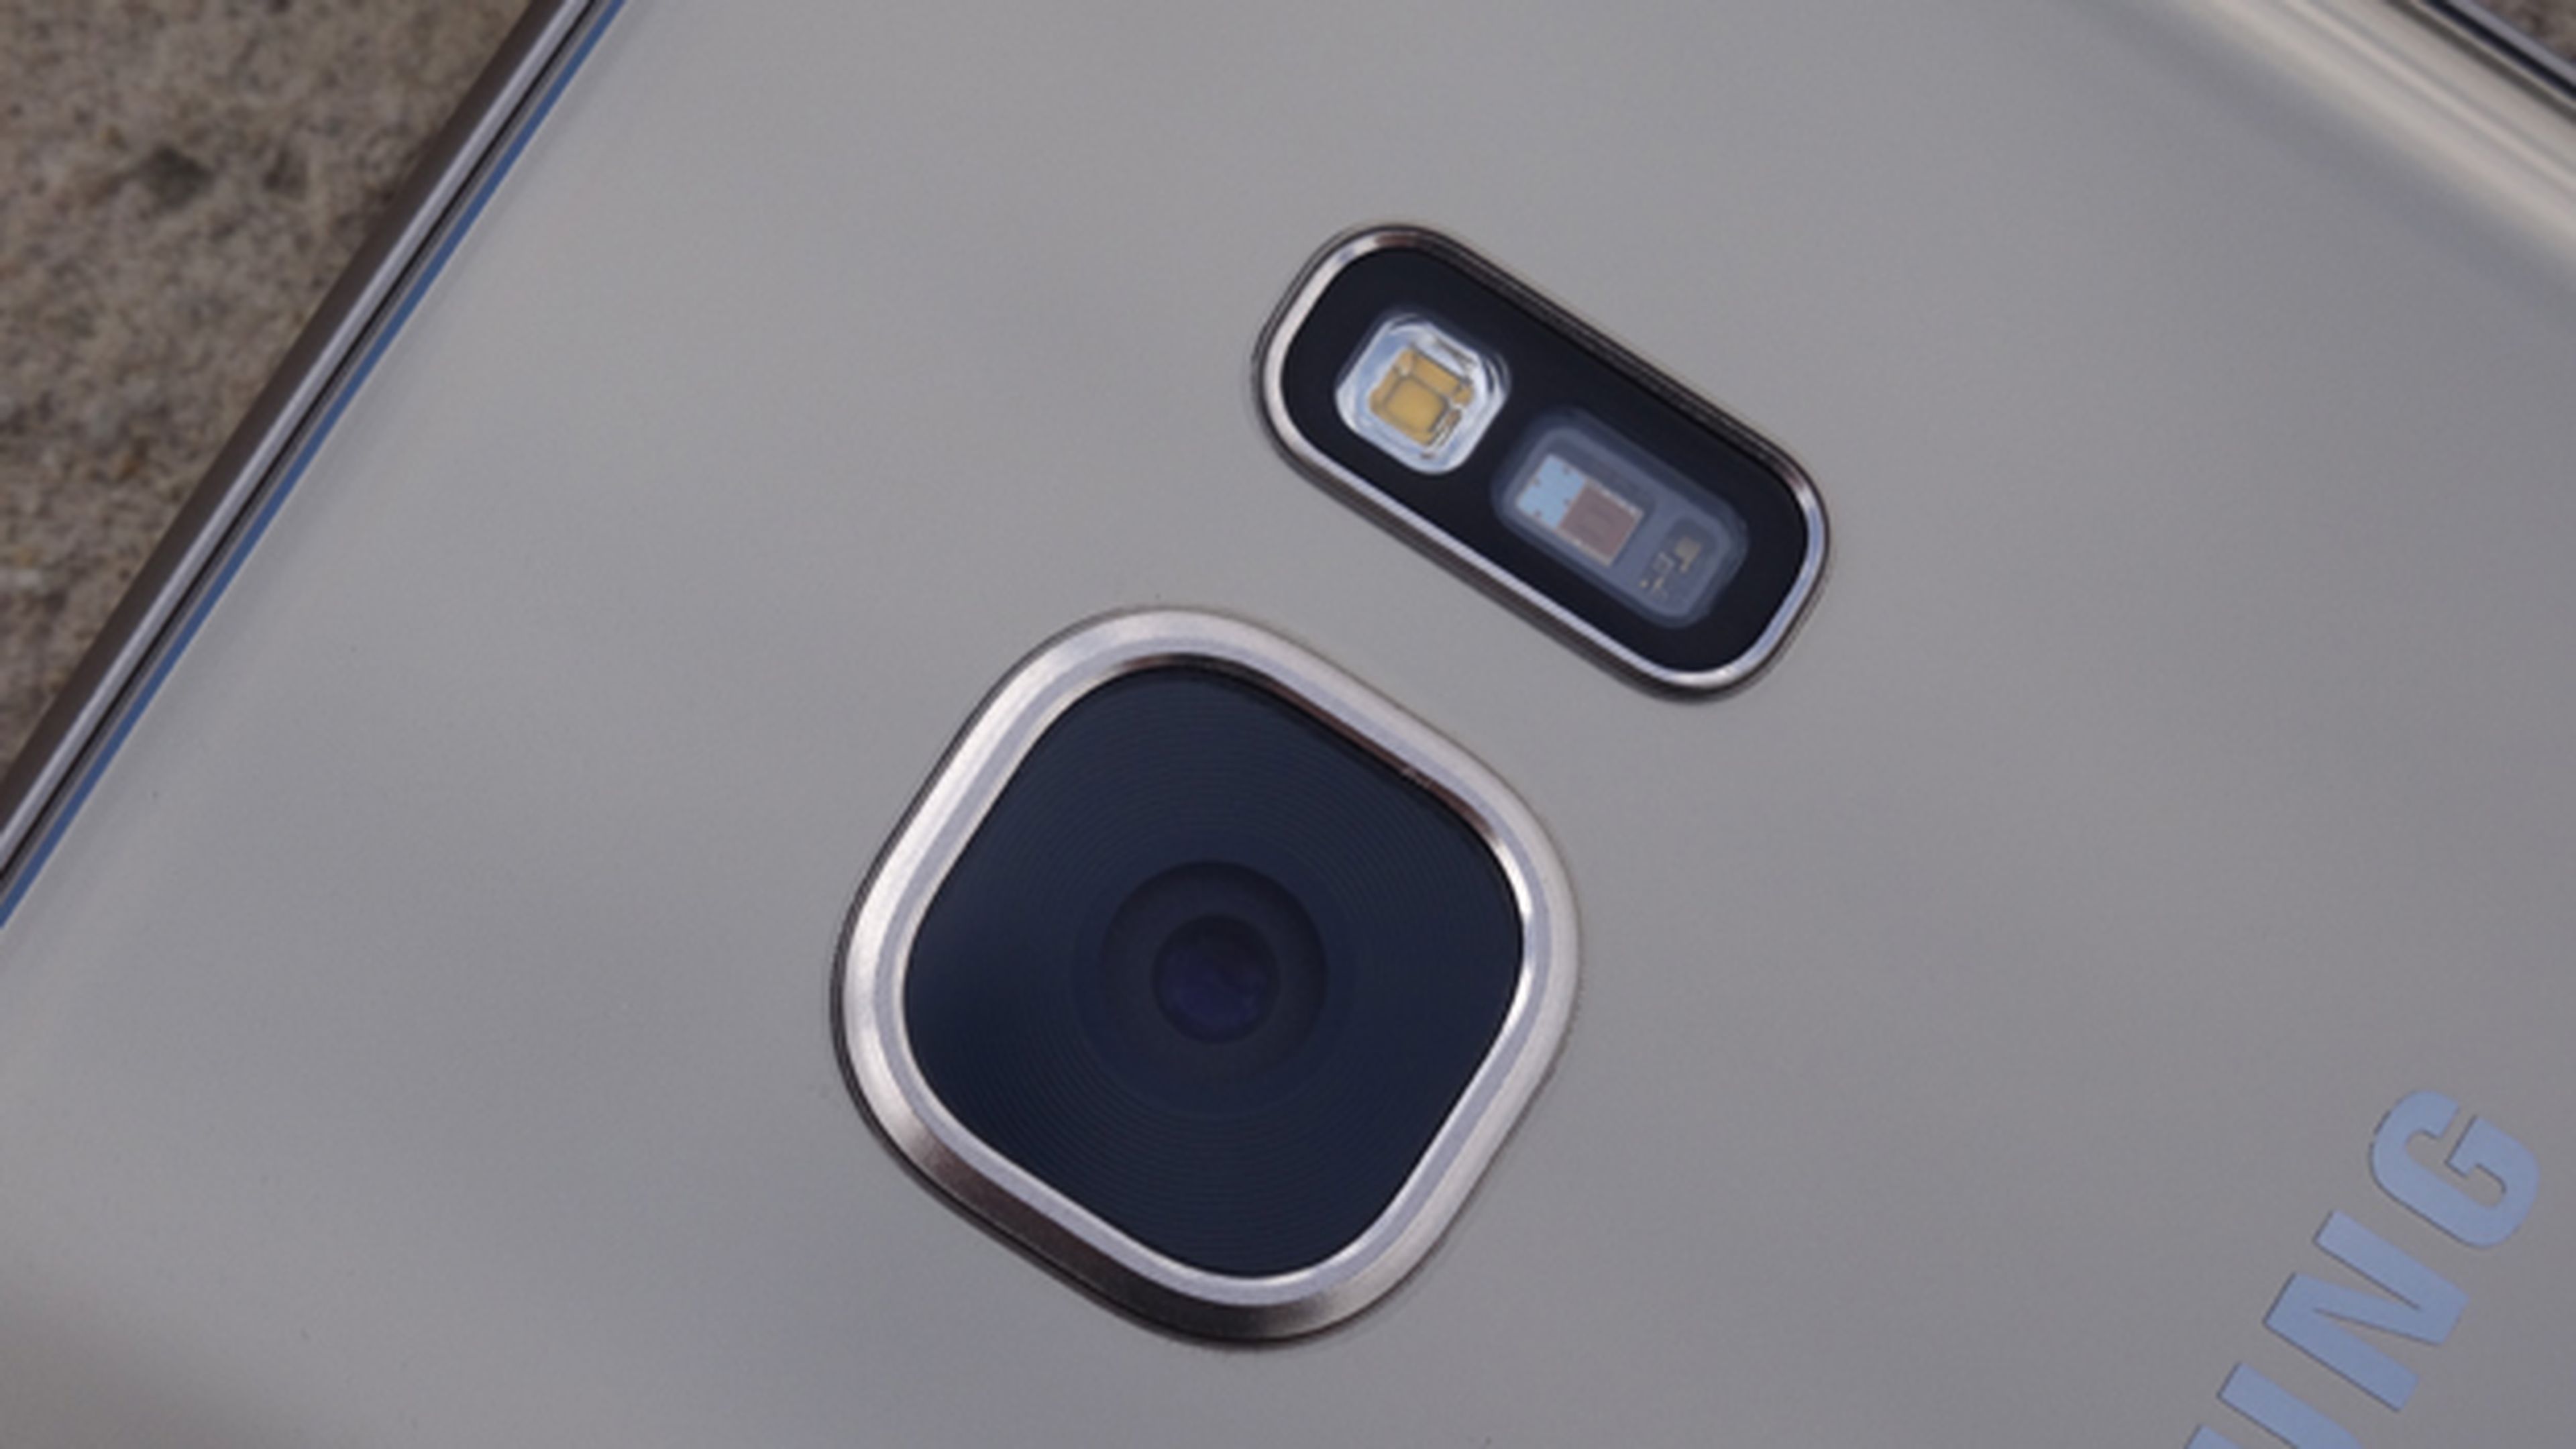 Detalle de la cámara principal del Samsung Galaxy S7 Edge